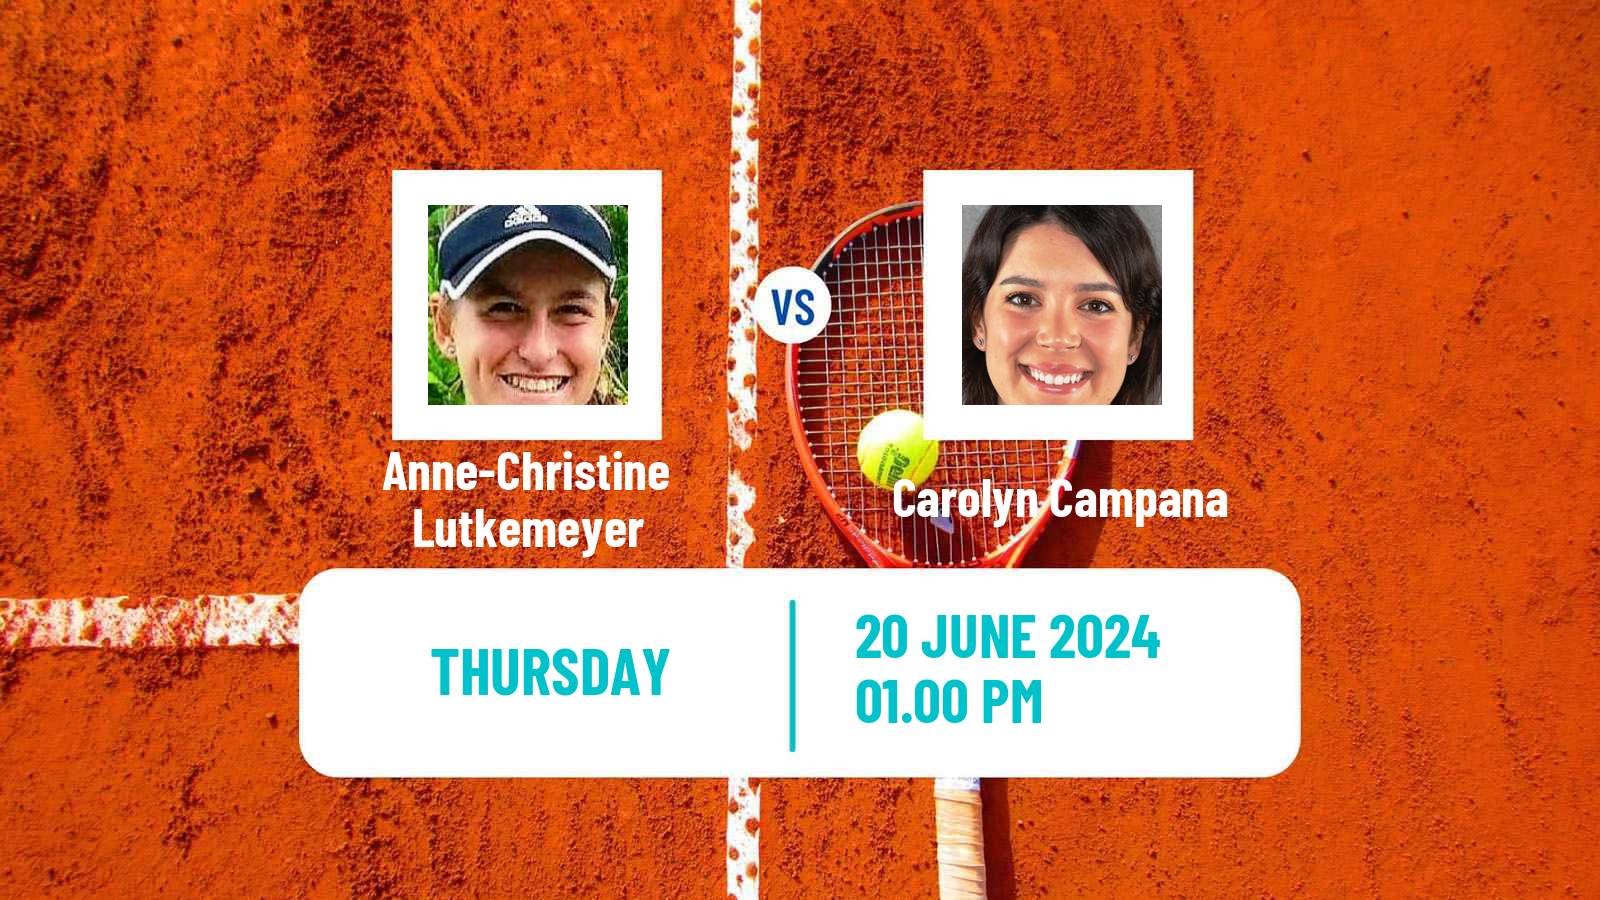 Tennis ITF W15 Rancho Santa Fe Ca Women Anne-Christine Lutkemeyer - Carolyn Campana